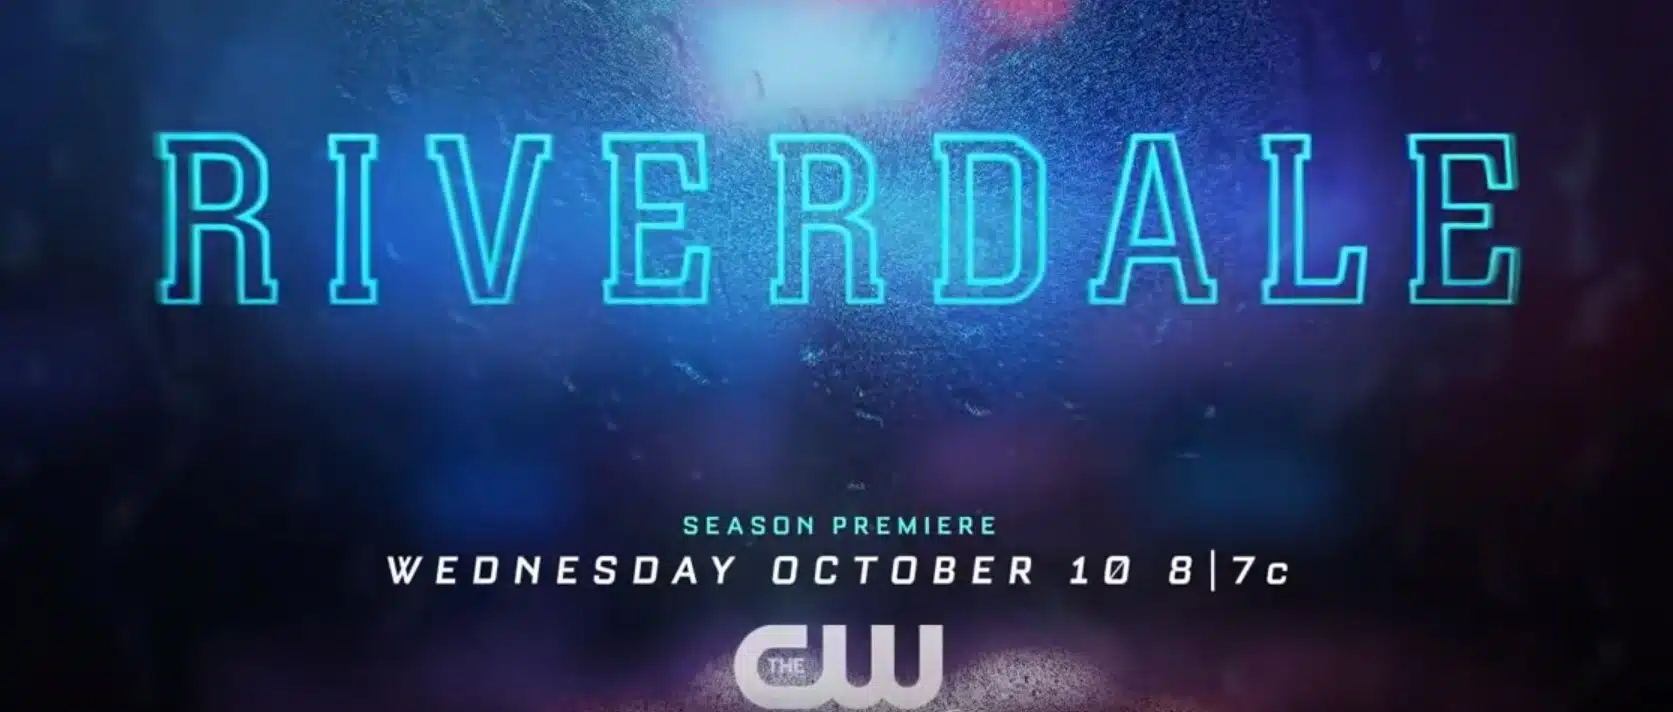 Riverdale 3 trama, cast, anticipazioni serie tv. Quando esce su Netflix